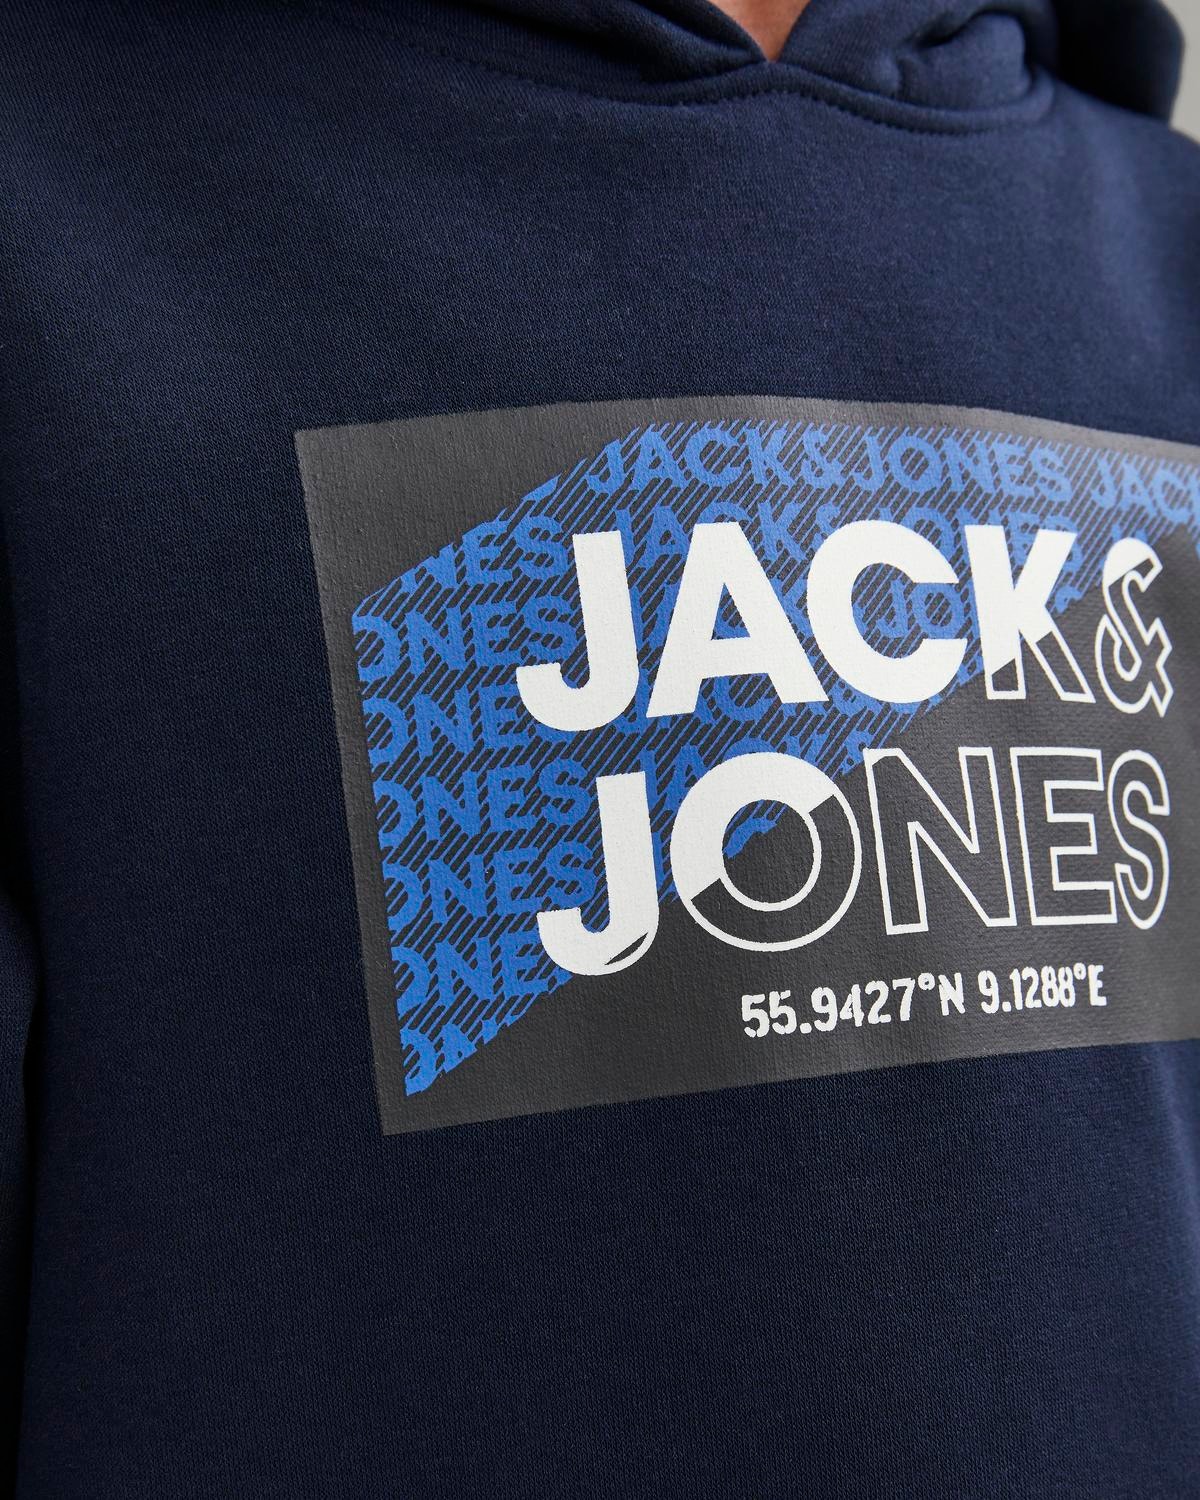 Jack & Jones Logo Hættetrøje Til drenge -Navy Blazer - 12242949